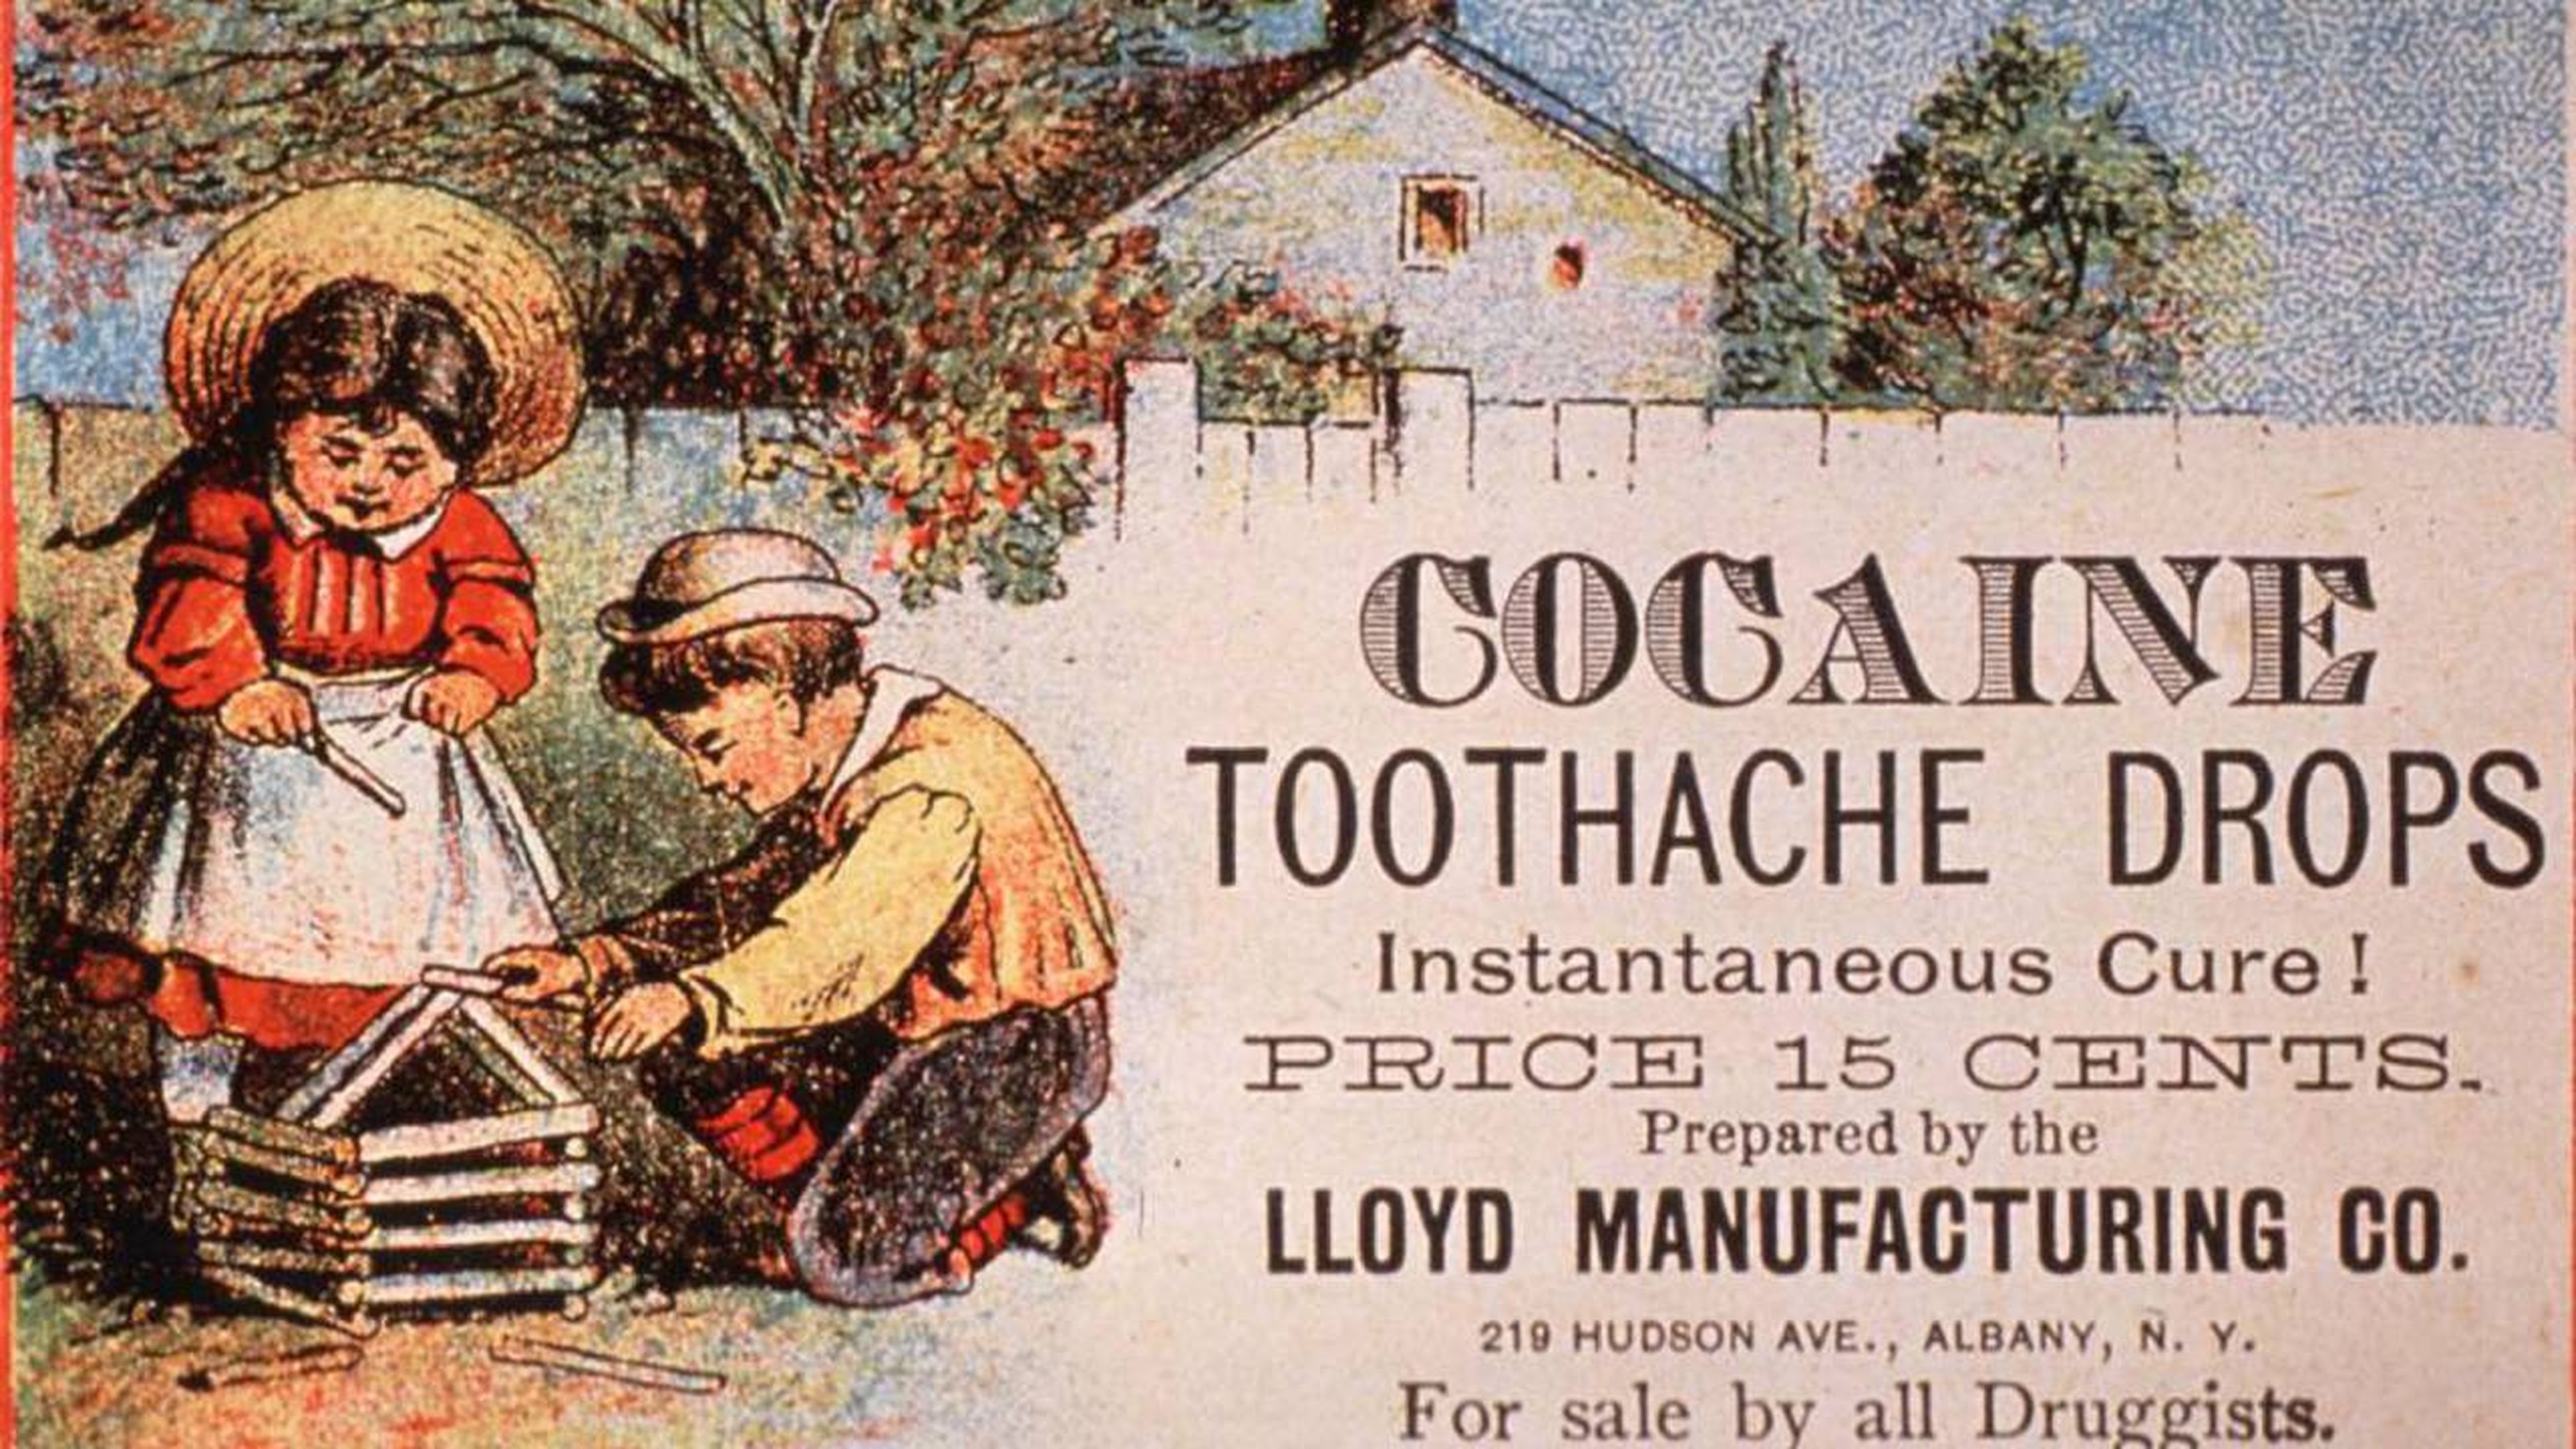 Anuncio que promocionaba un remedio hecho con cocaína para aliviar el dolor de muelas en los niños.